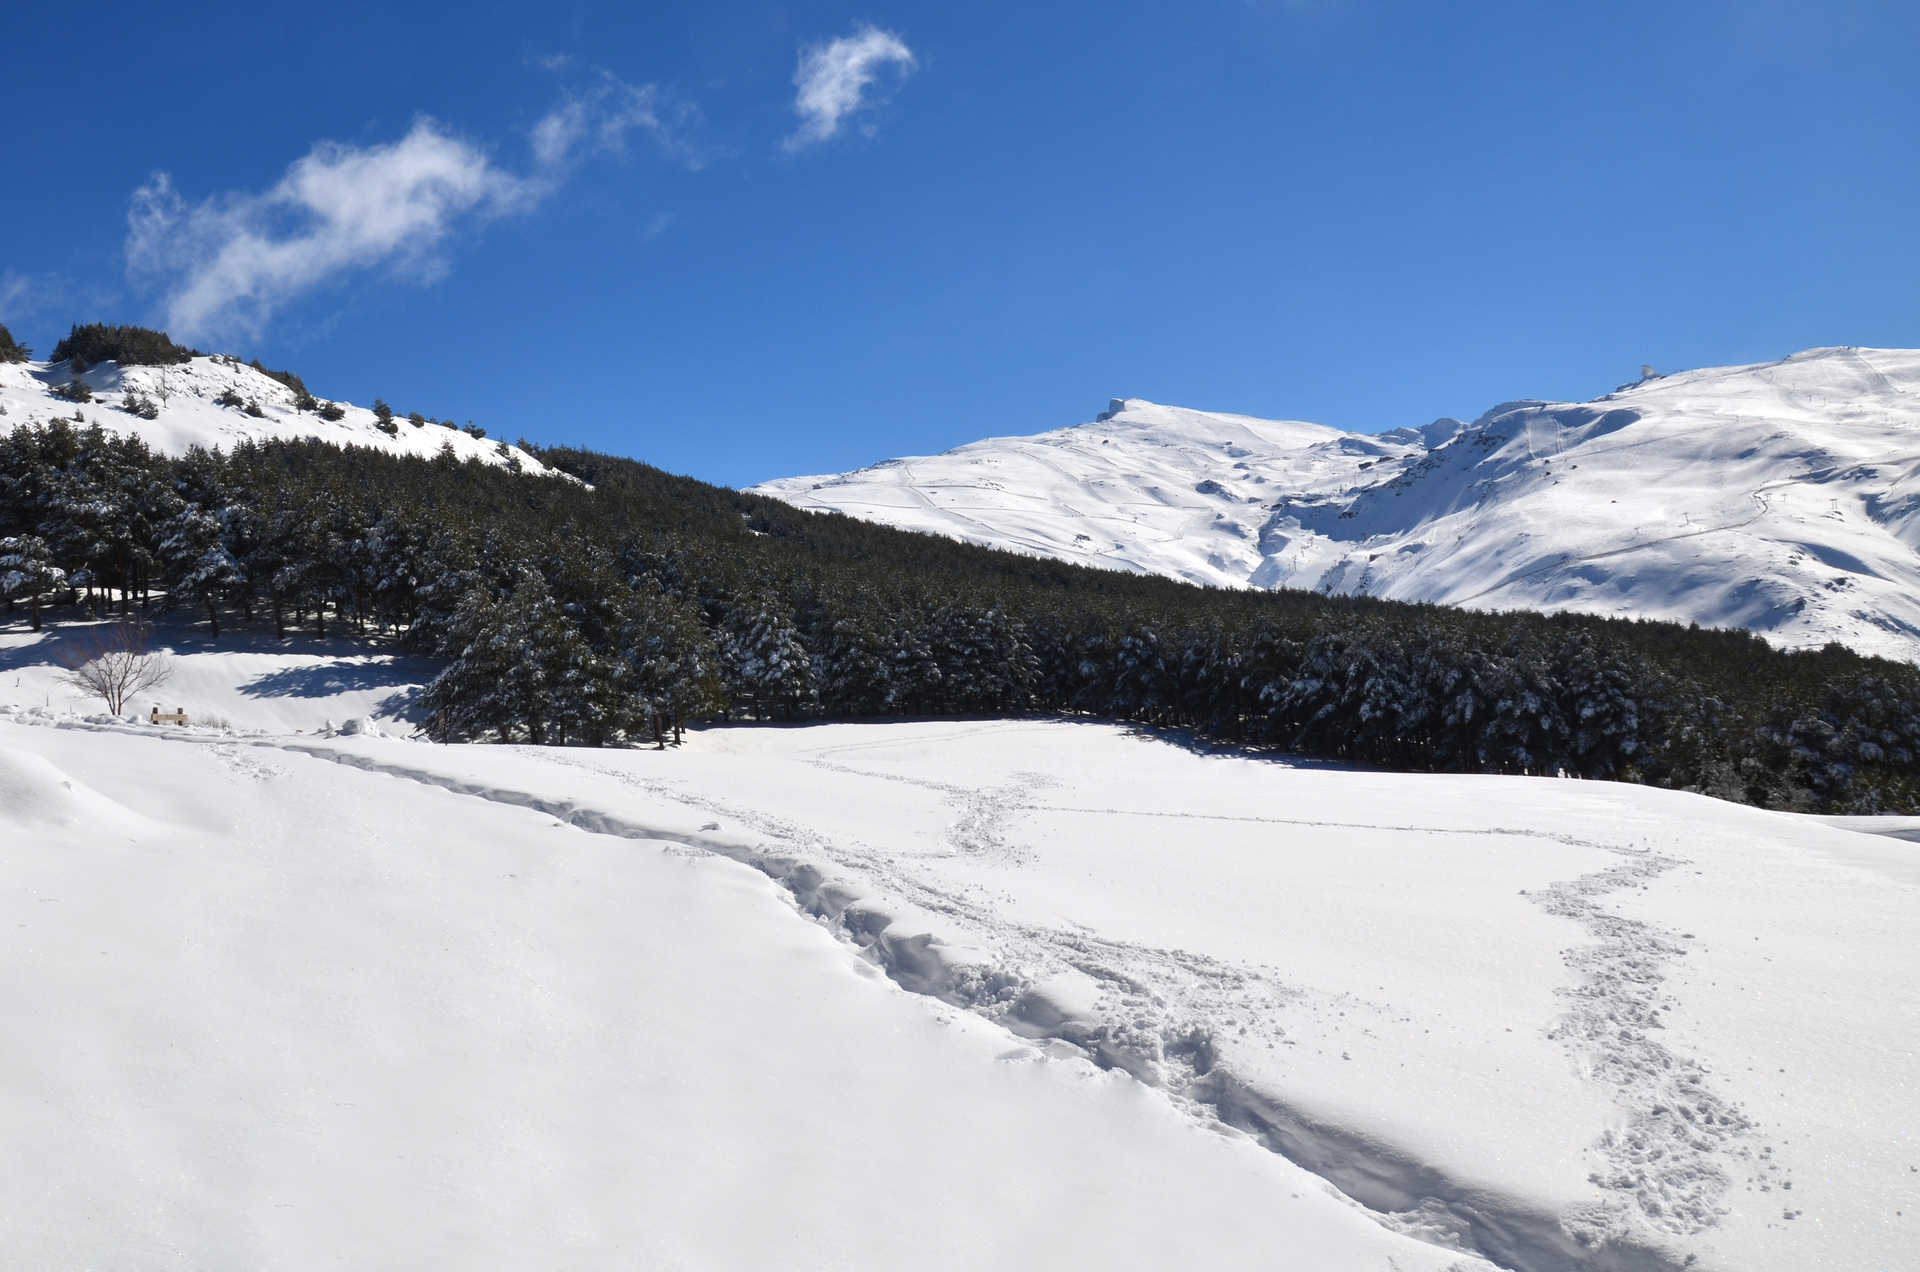 Naturaleza Sierra Nevada y raquetas de nieve.jpg 